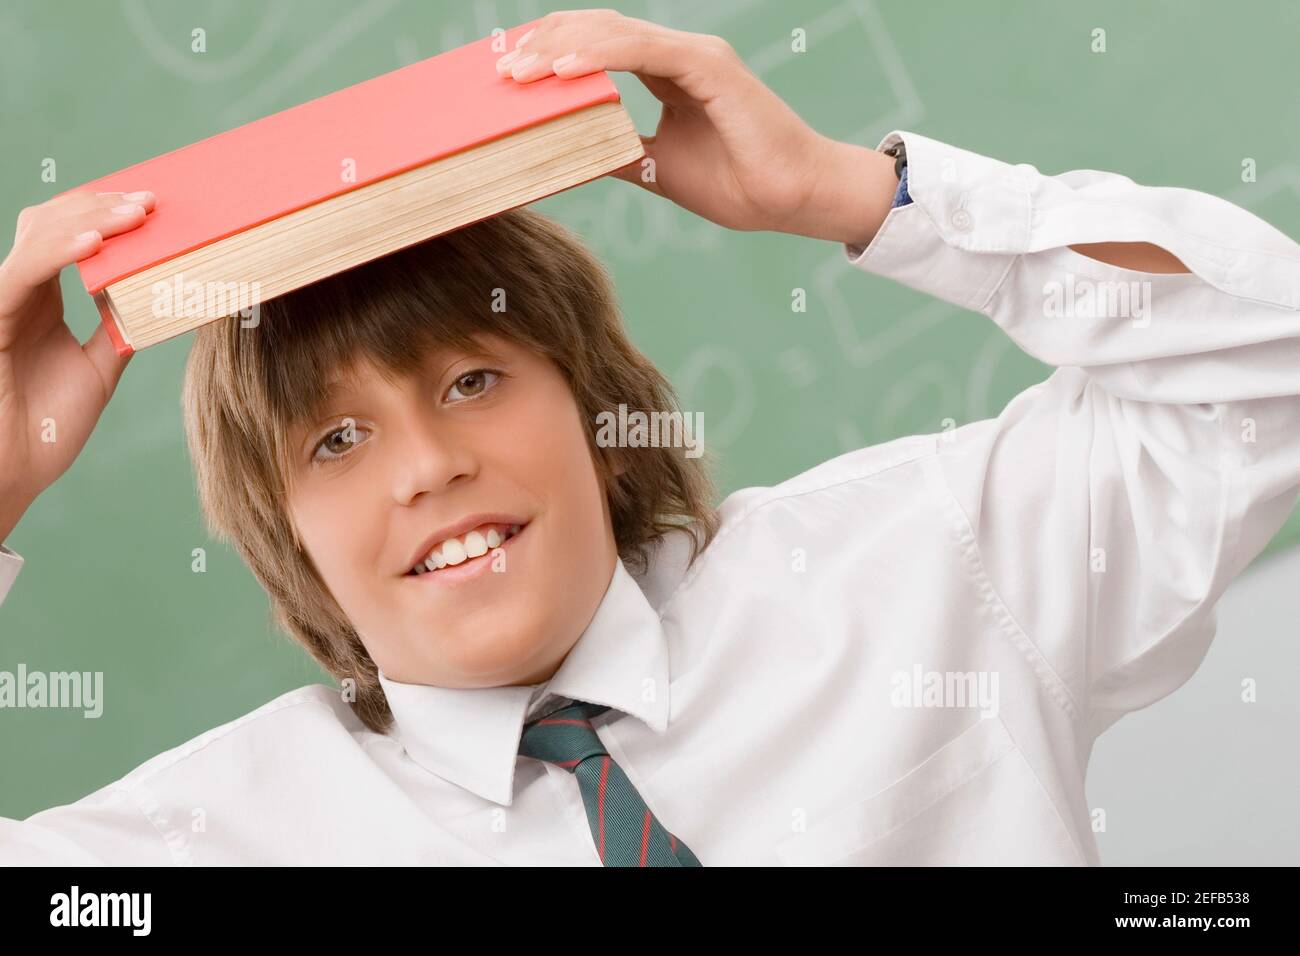 Retrato de un niño que sostiene un libro sobre su cabeza y sonriendo Foto de stock